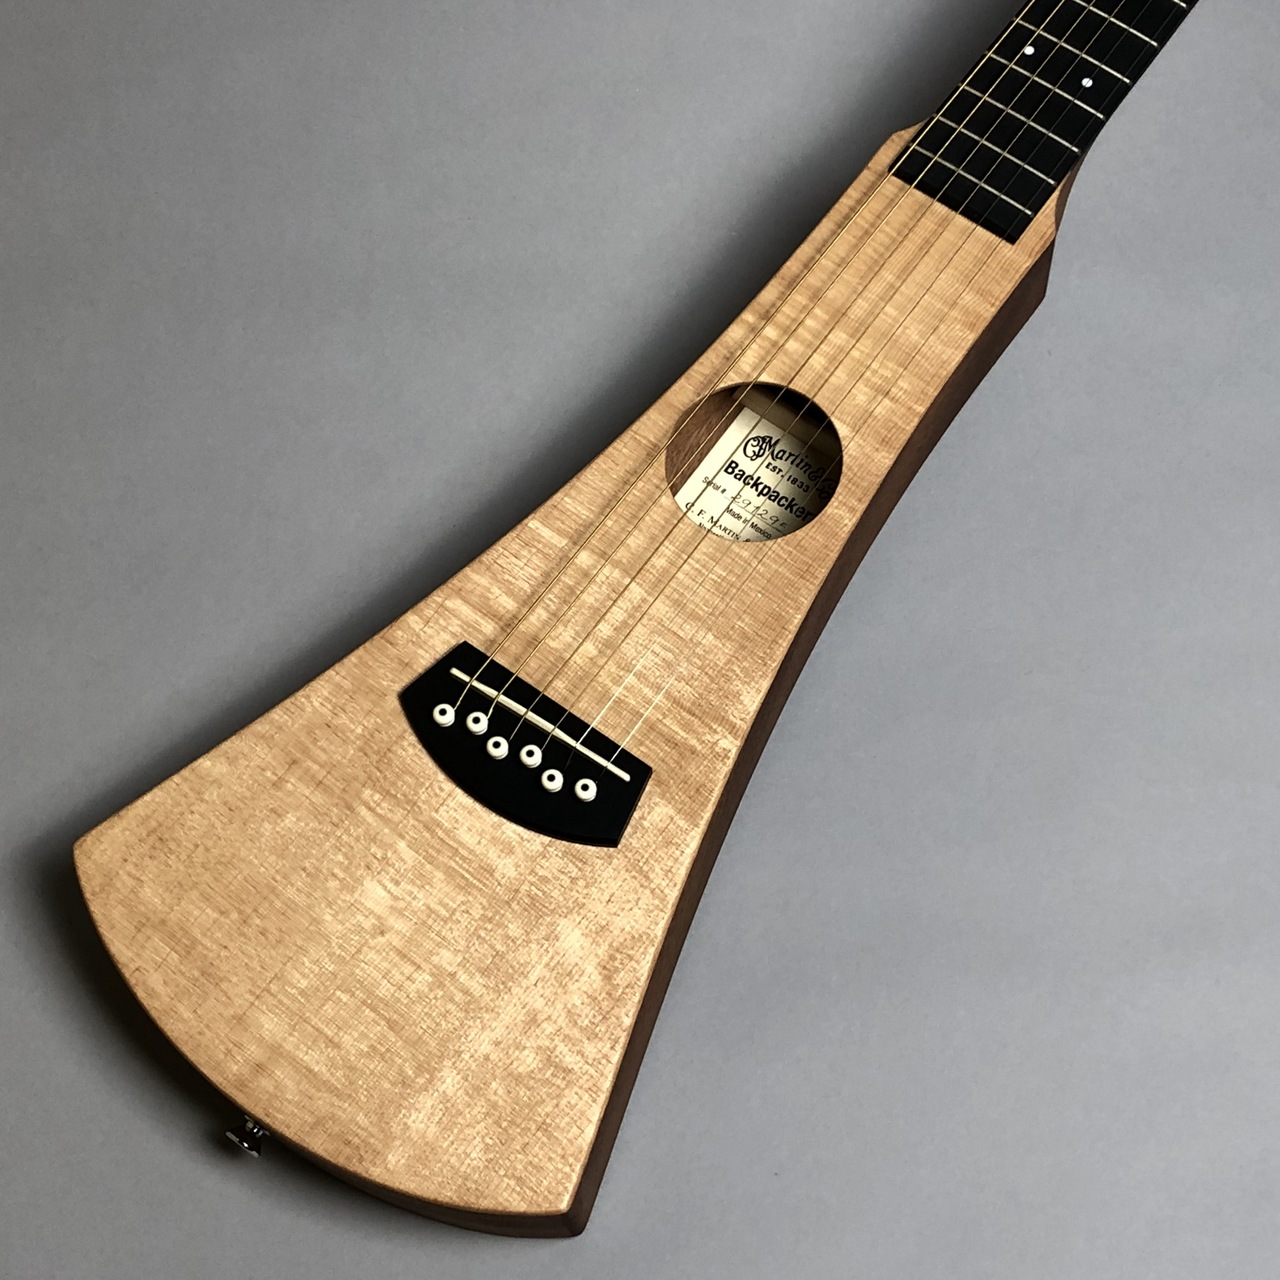 Martin - Martin バックパッカーギター 貴重なナイロン弦の+